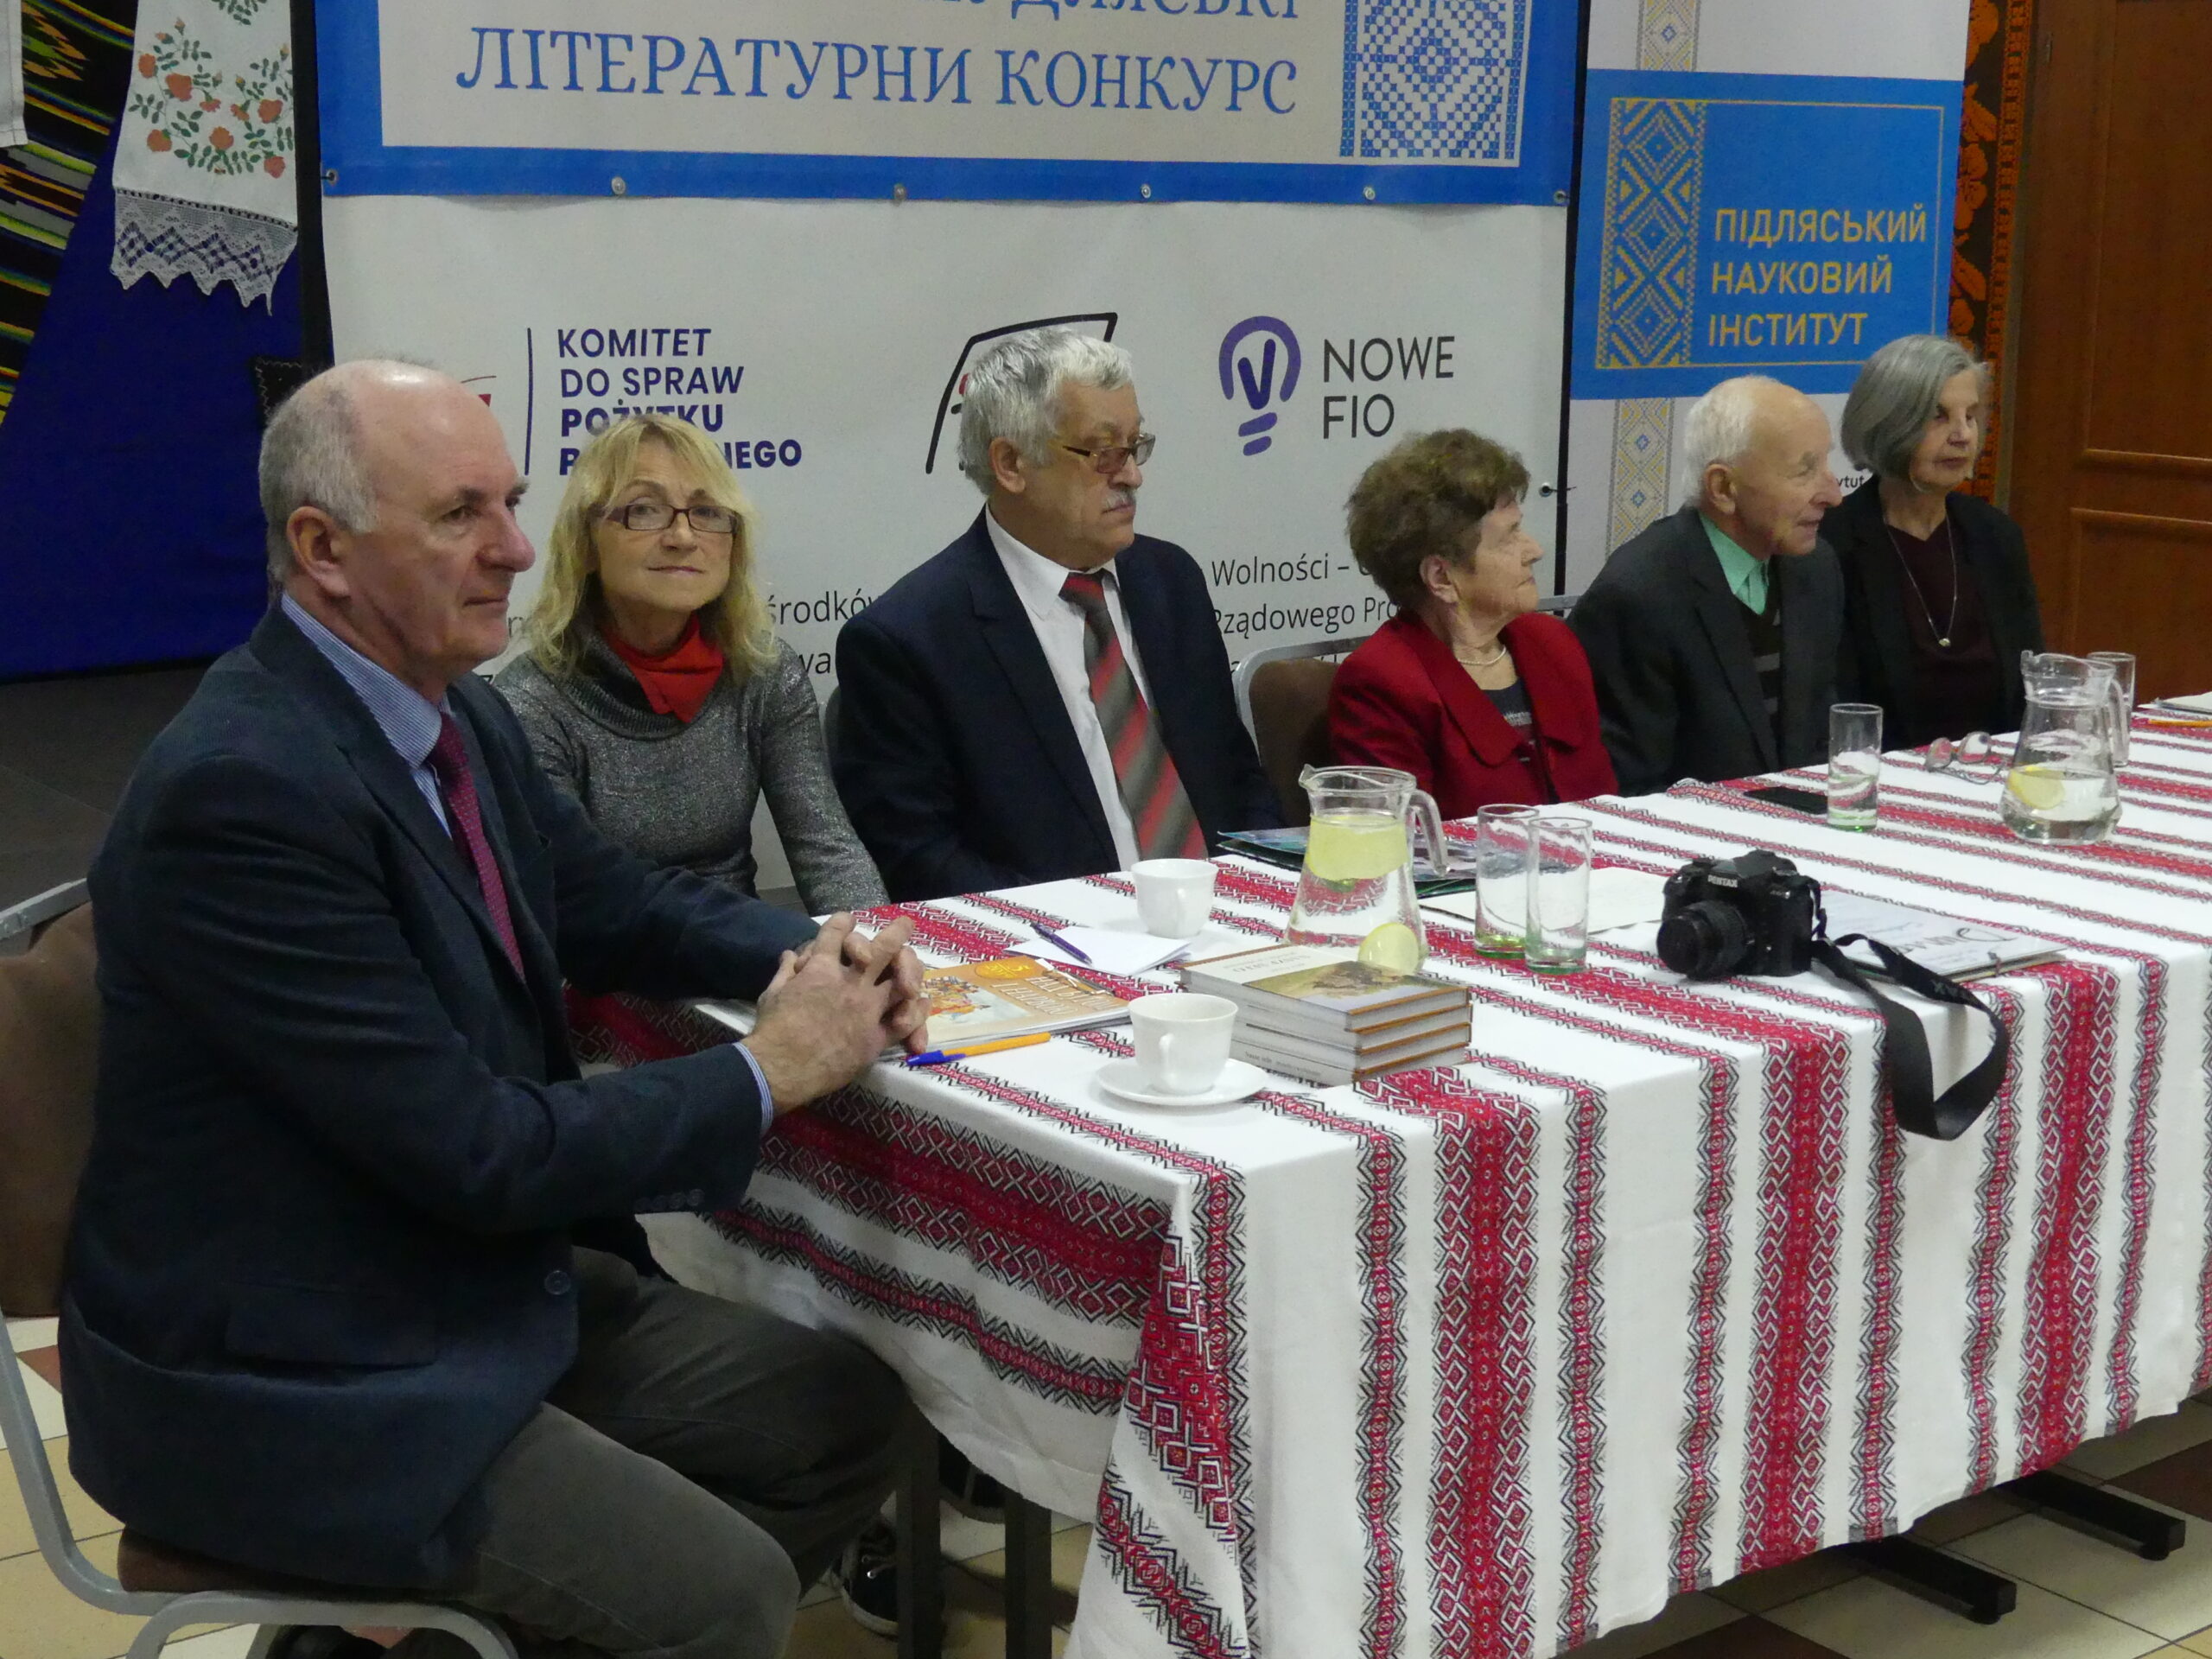 Spotkanie literackie laureatów konkursu „Piszemo po swojomu” w Dubiczach Cerkiewnych